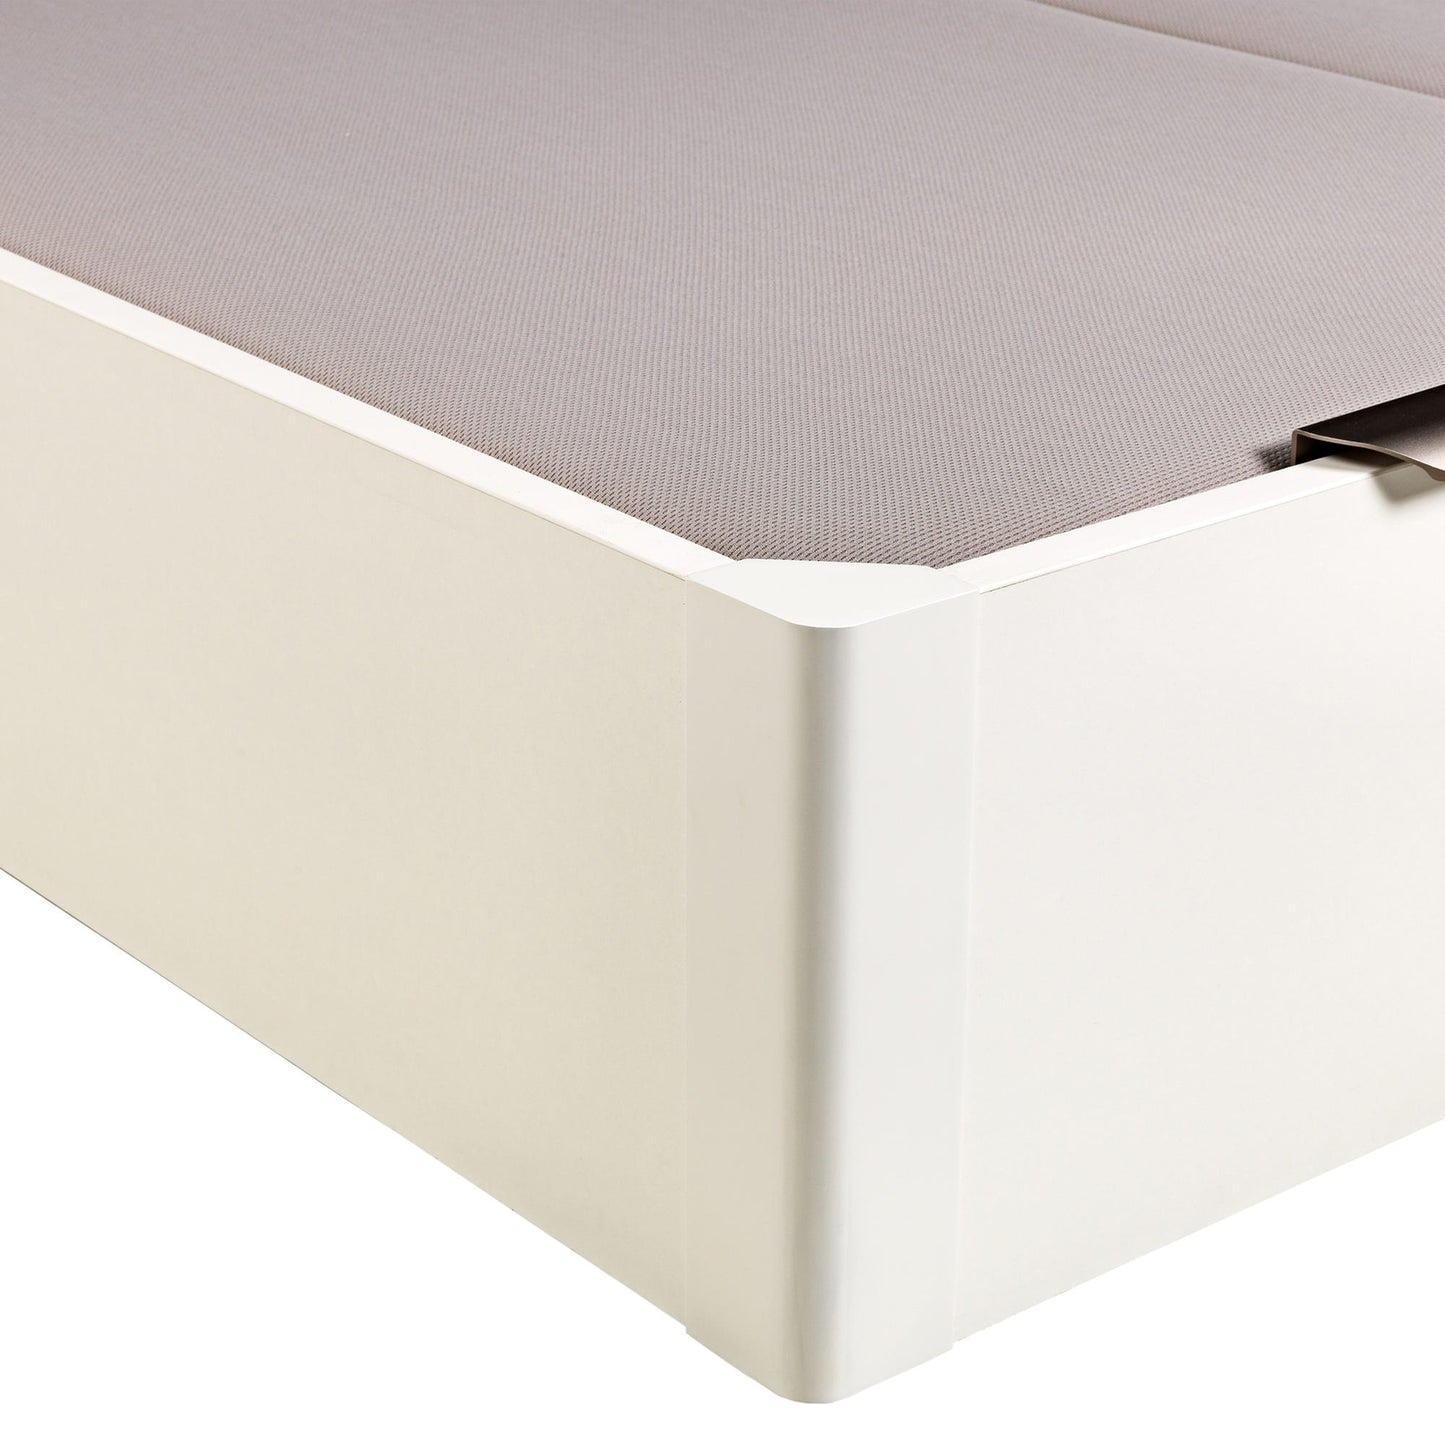 Canapé abatible de madera de tapa doble de color blanco - DESIGN - 160x190